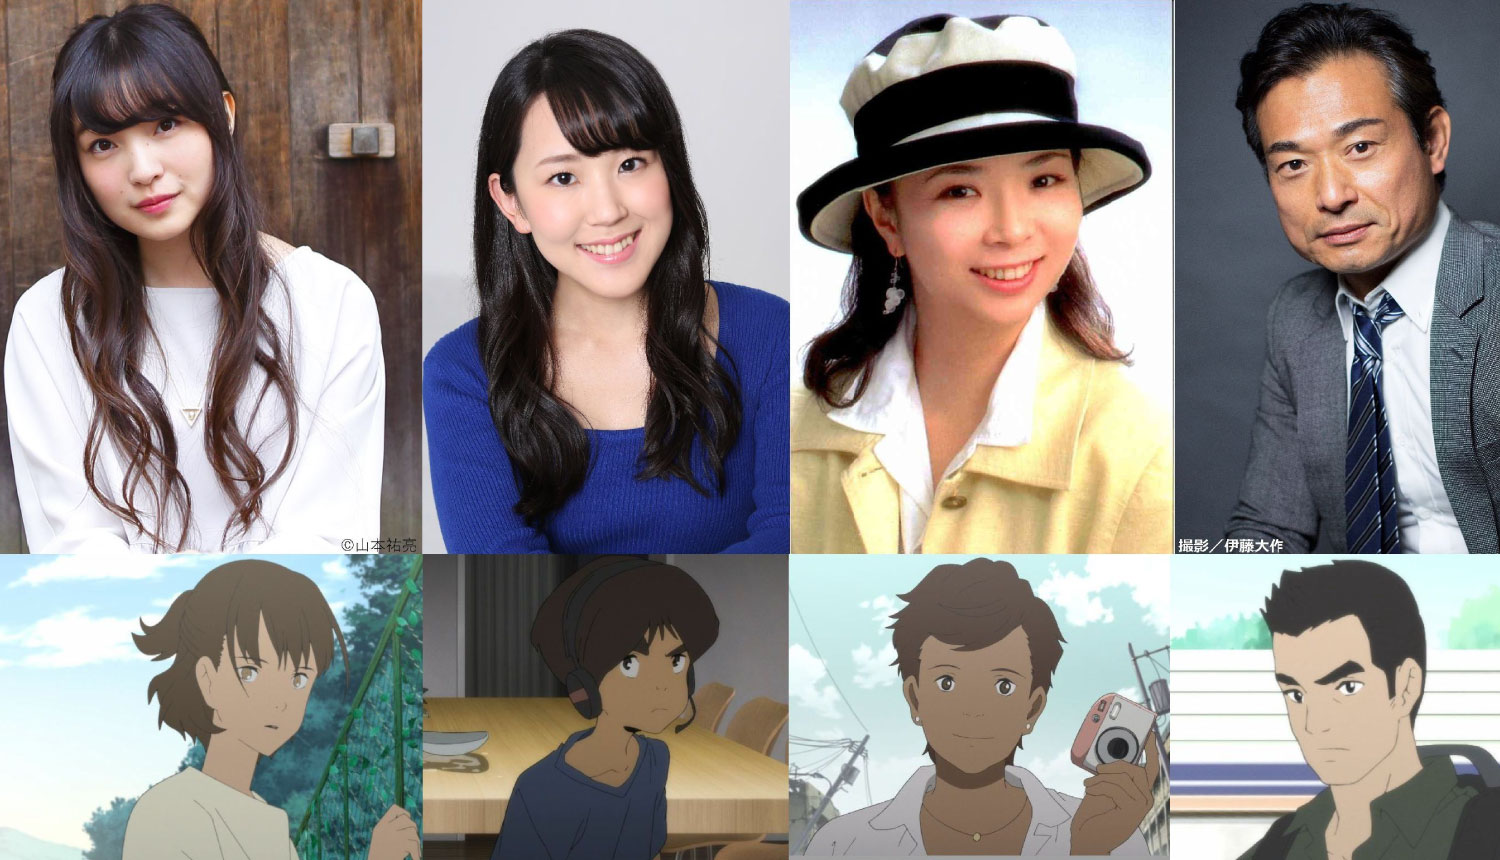 Japan Sinks Anime: data de lançamento, trailer, recursos visuais